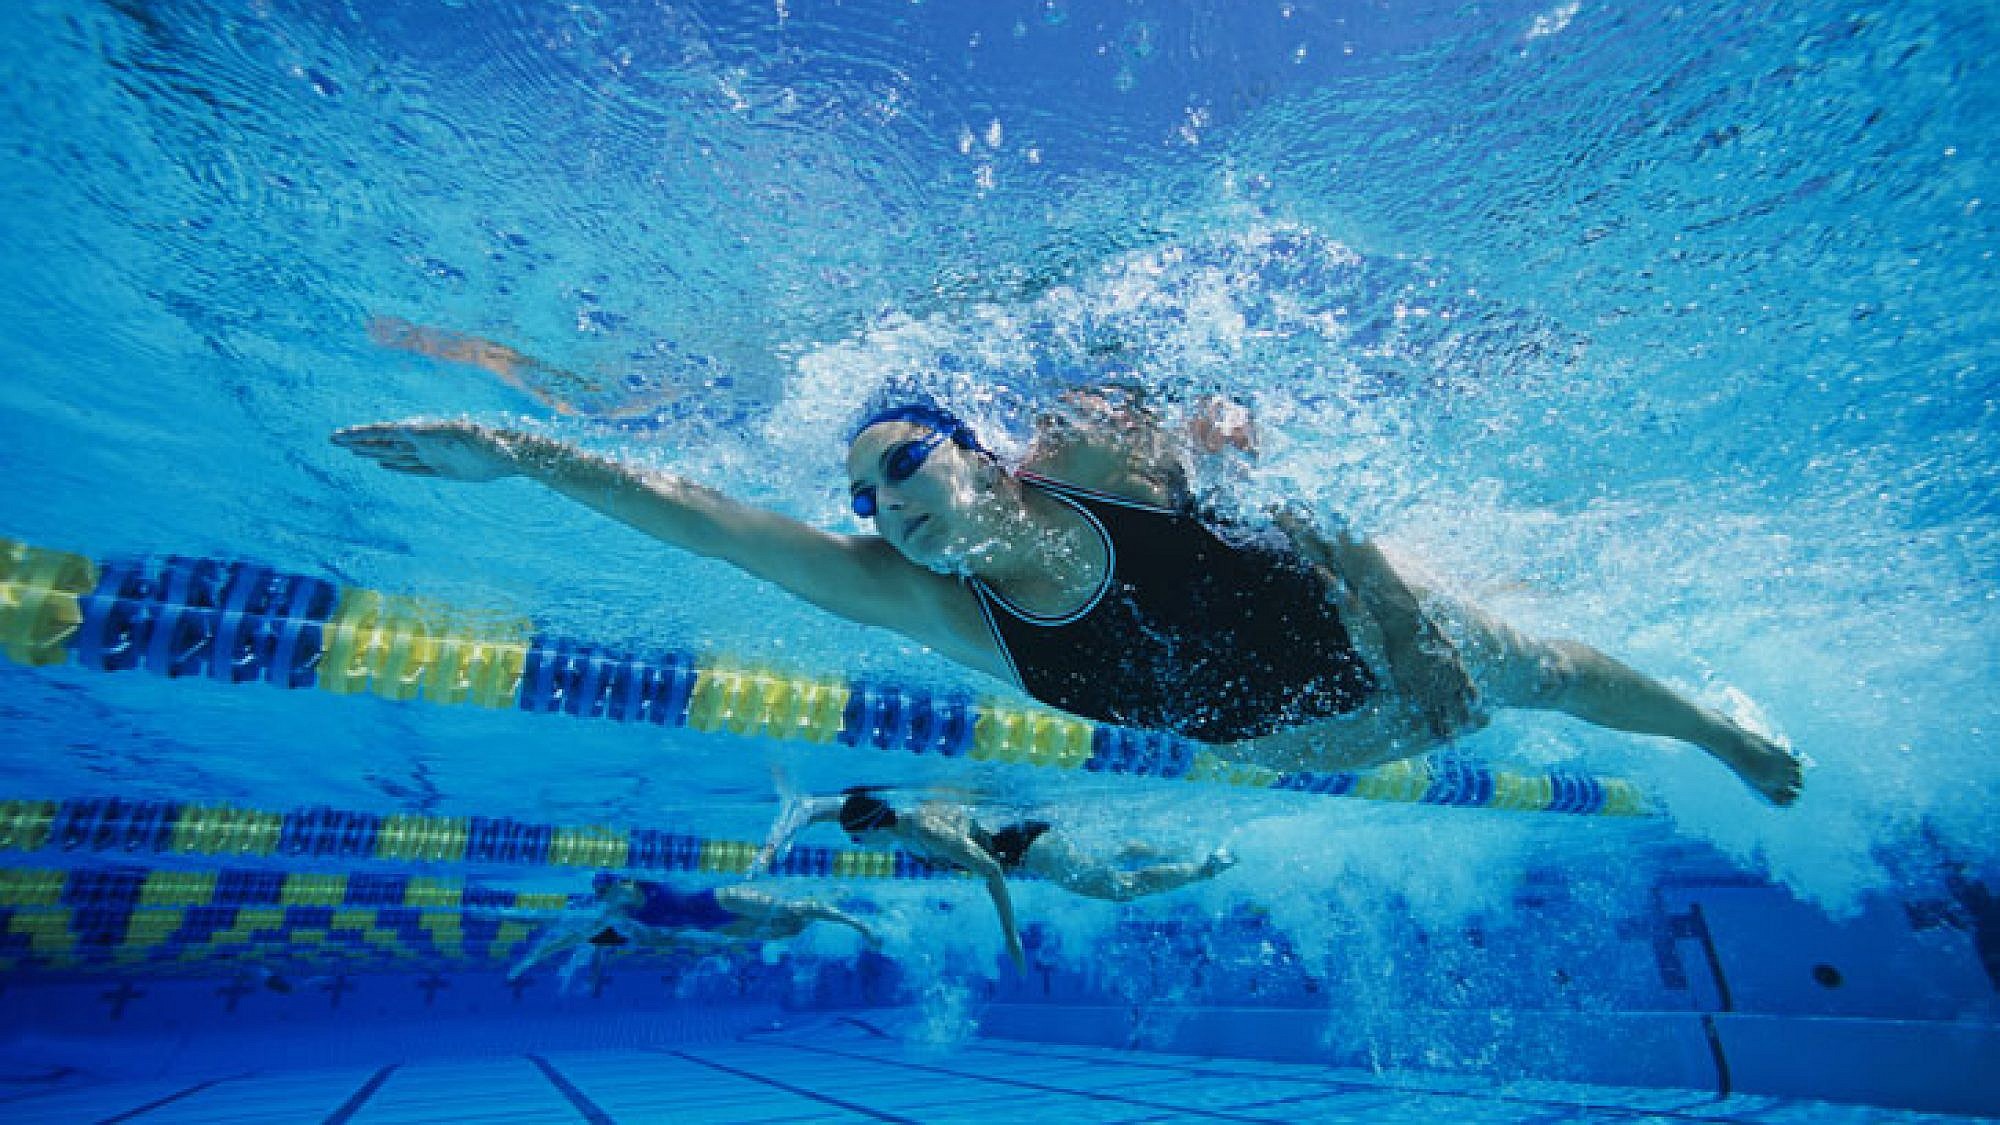 שחייה -  הפעילות הגופנית האולטימטיבית לקיץ | צלם: א.ס.א.פ קריאייטיב | bikeriderlondon, shutterstock